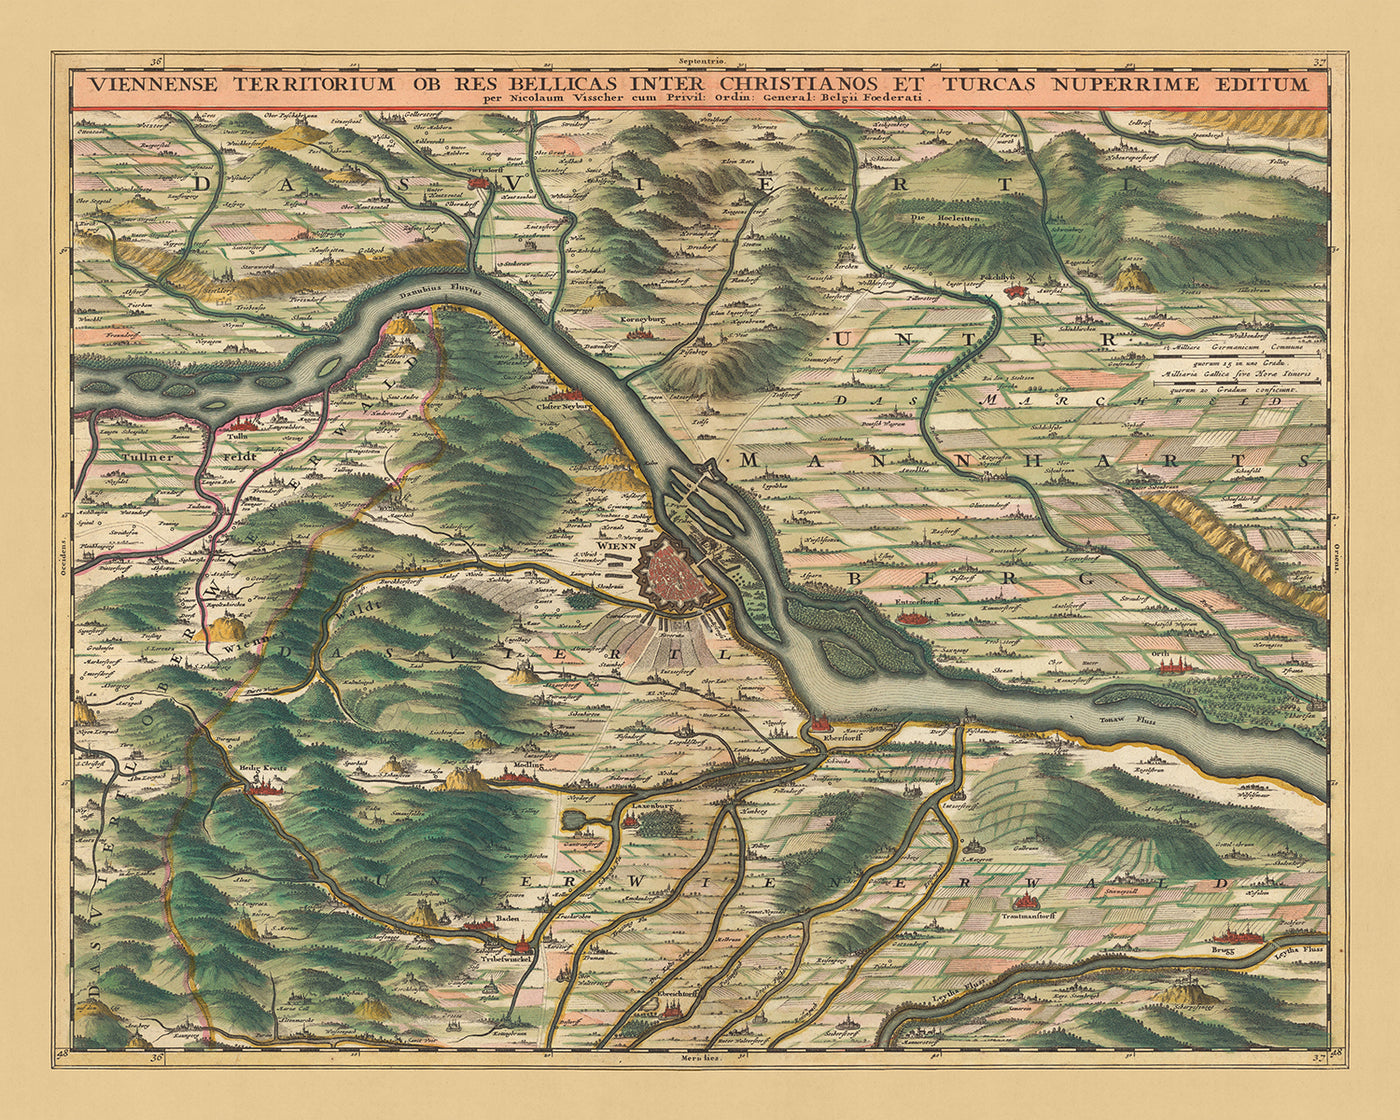 Ancienne carte du territoire autour de Vienne : Visscher, 1690 : Tulln, Schwechat, Klosterneuburg, Baden bei Vien, Lainzer Tiergarten